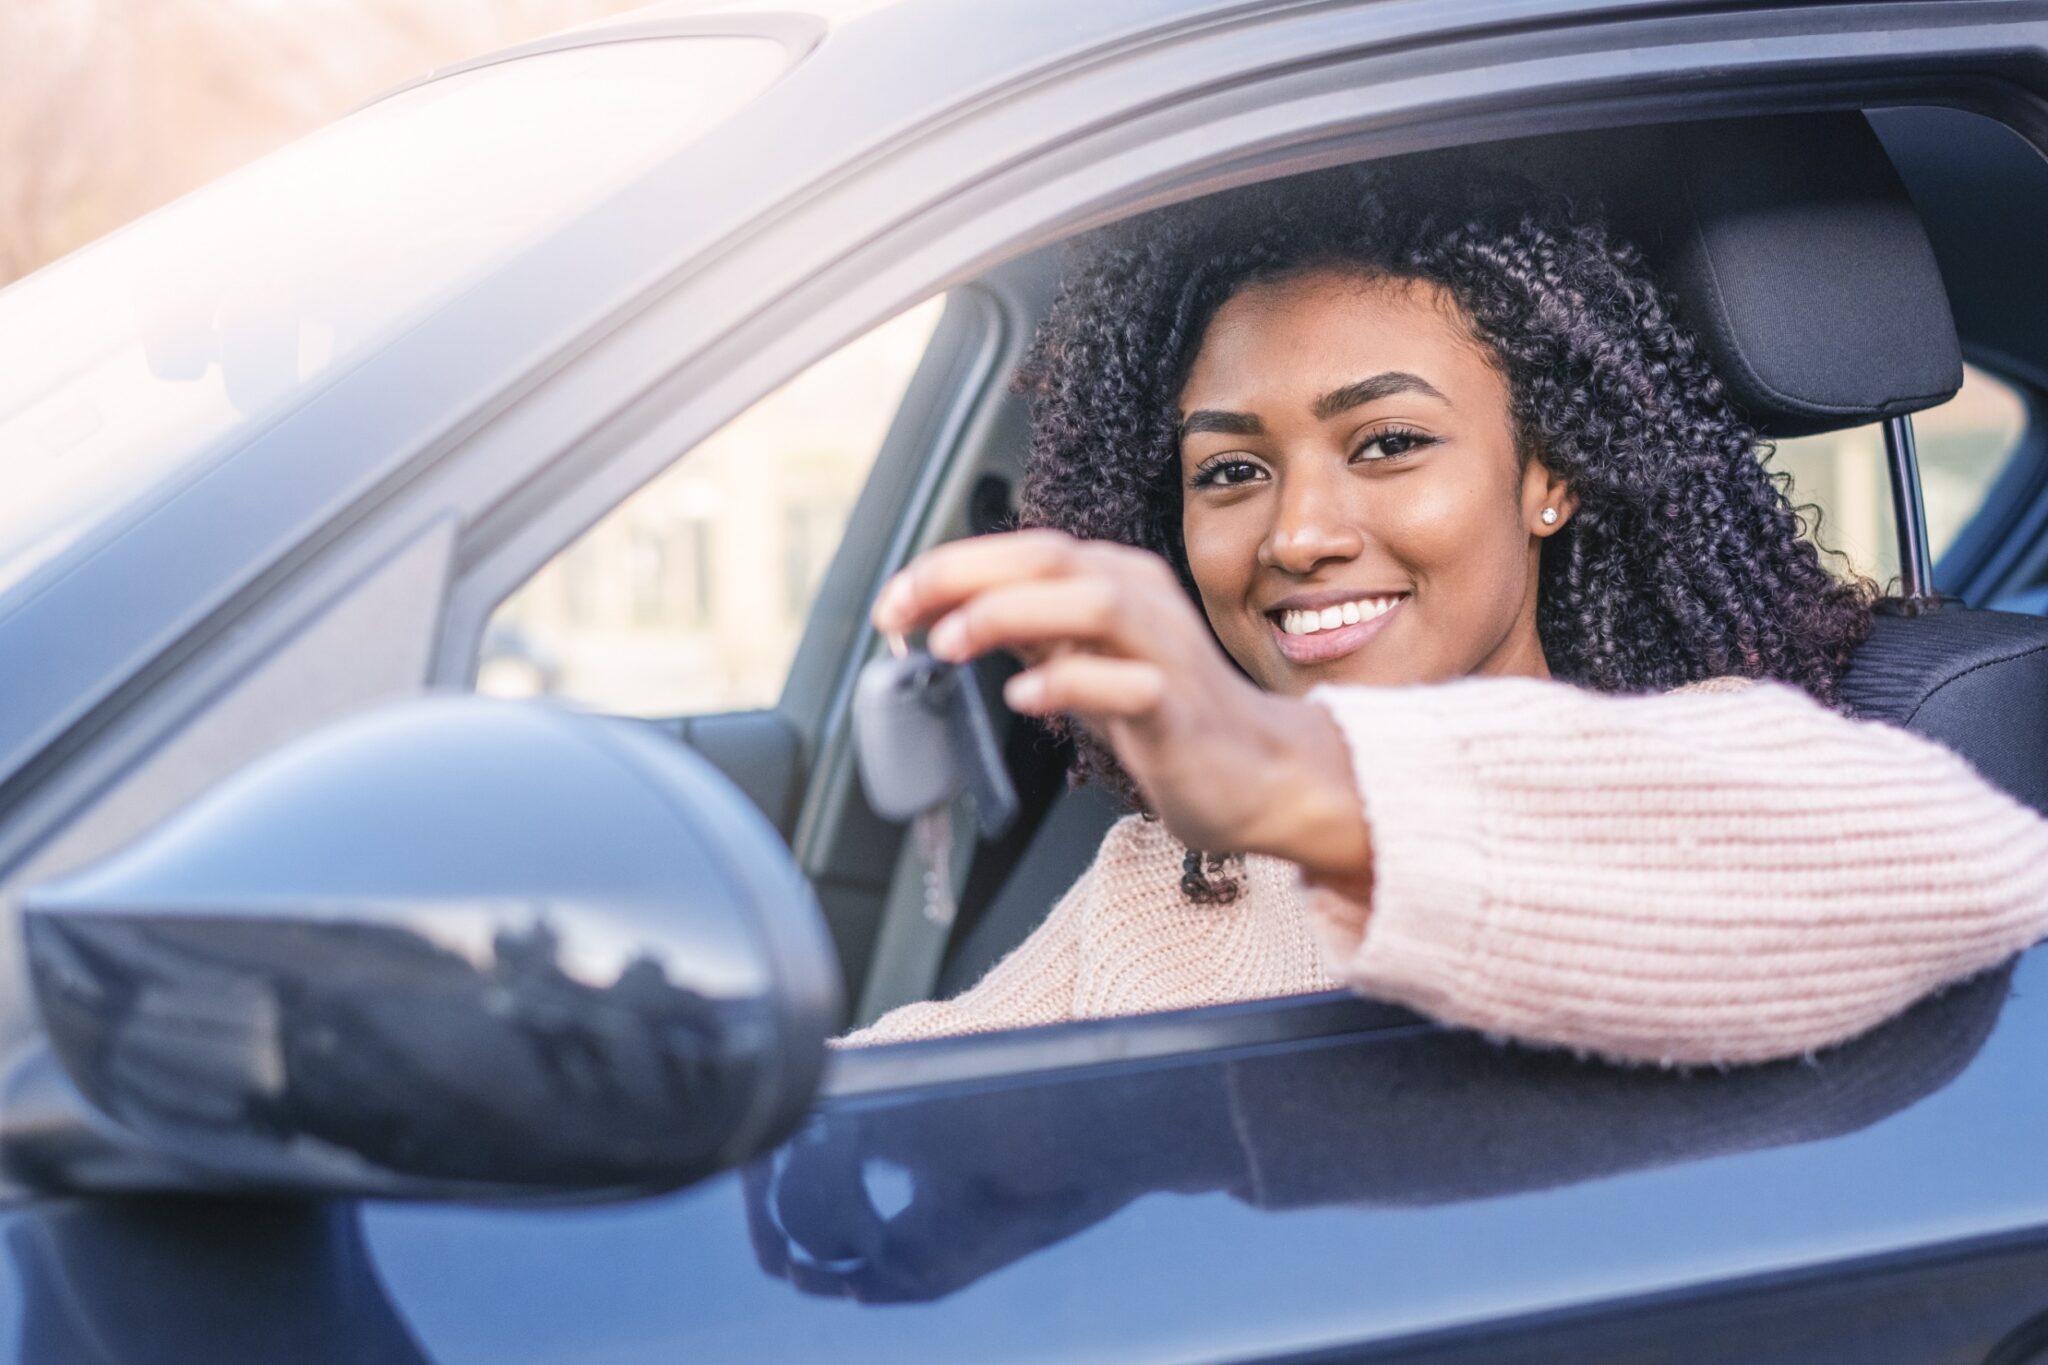 Jeunes conducteurs : statut et règles en vigueur, choix de la voiture et de  l'assurance – CapCar